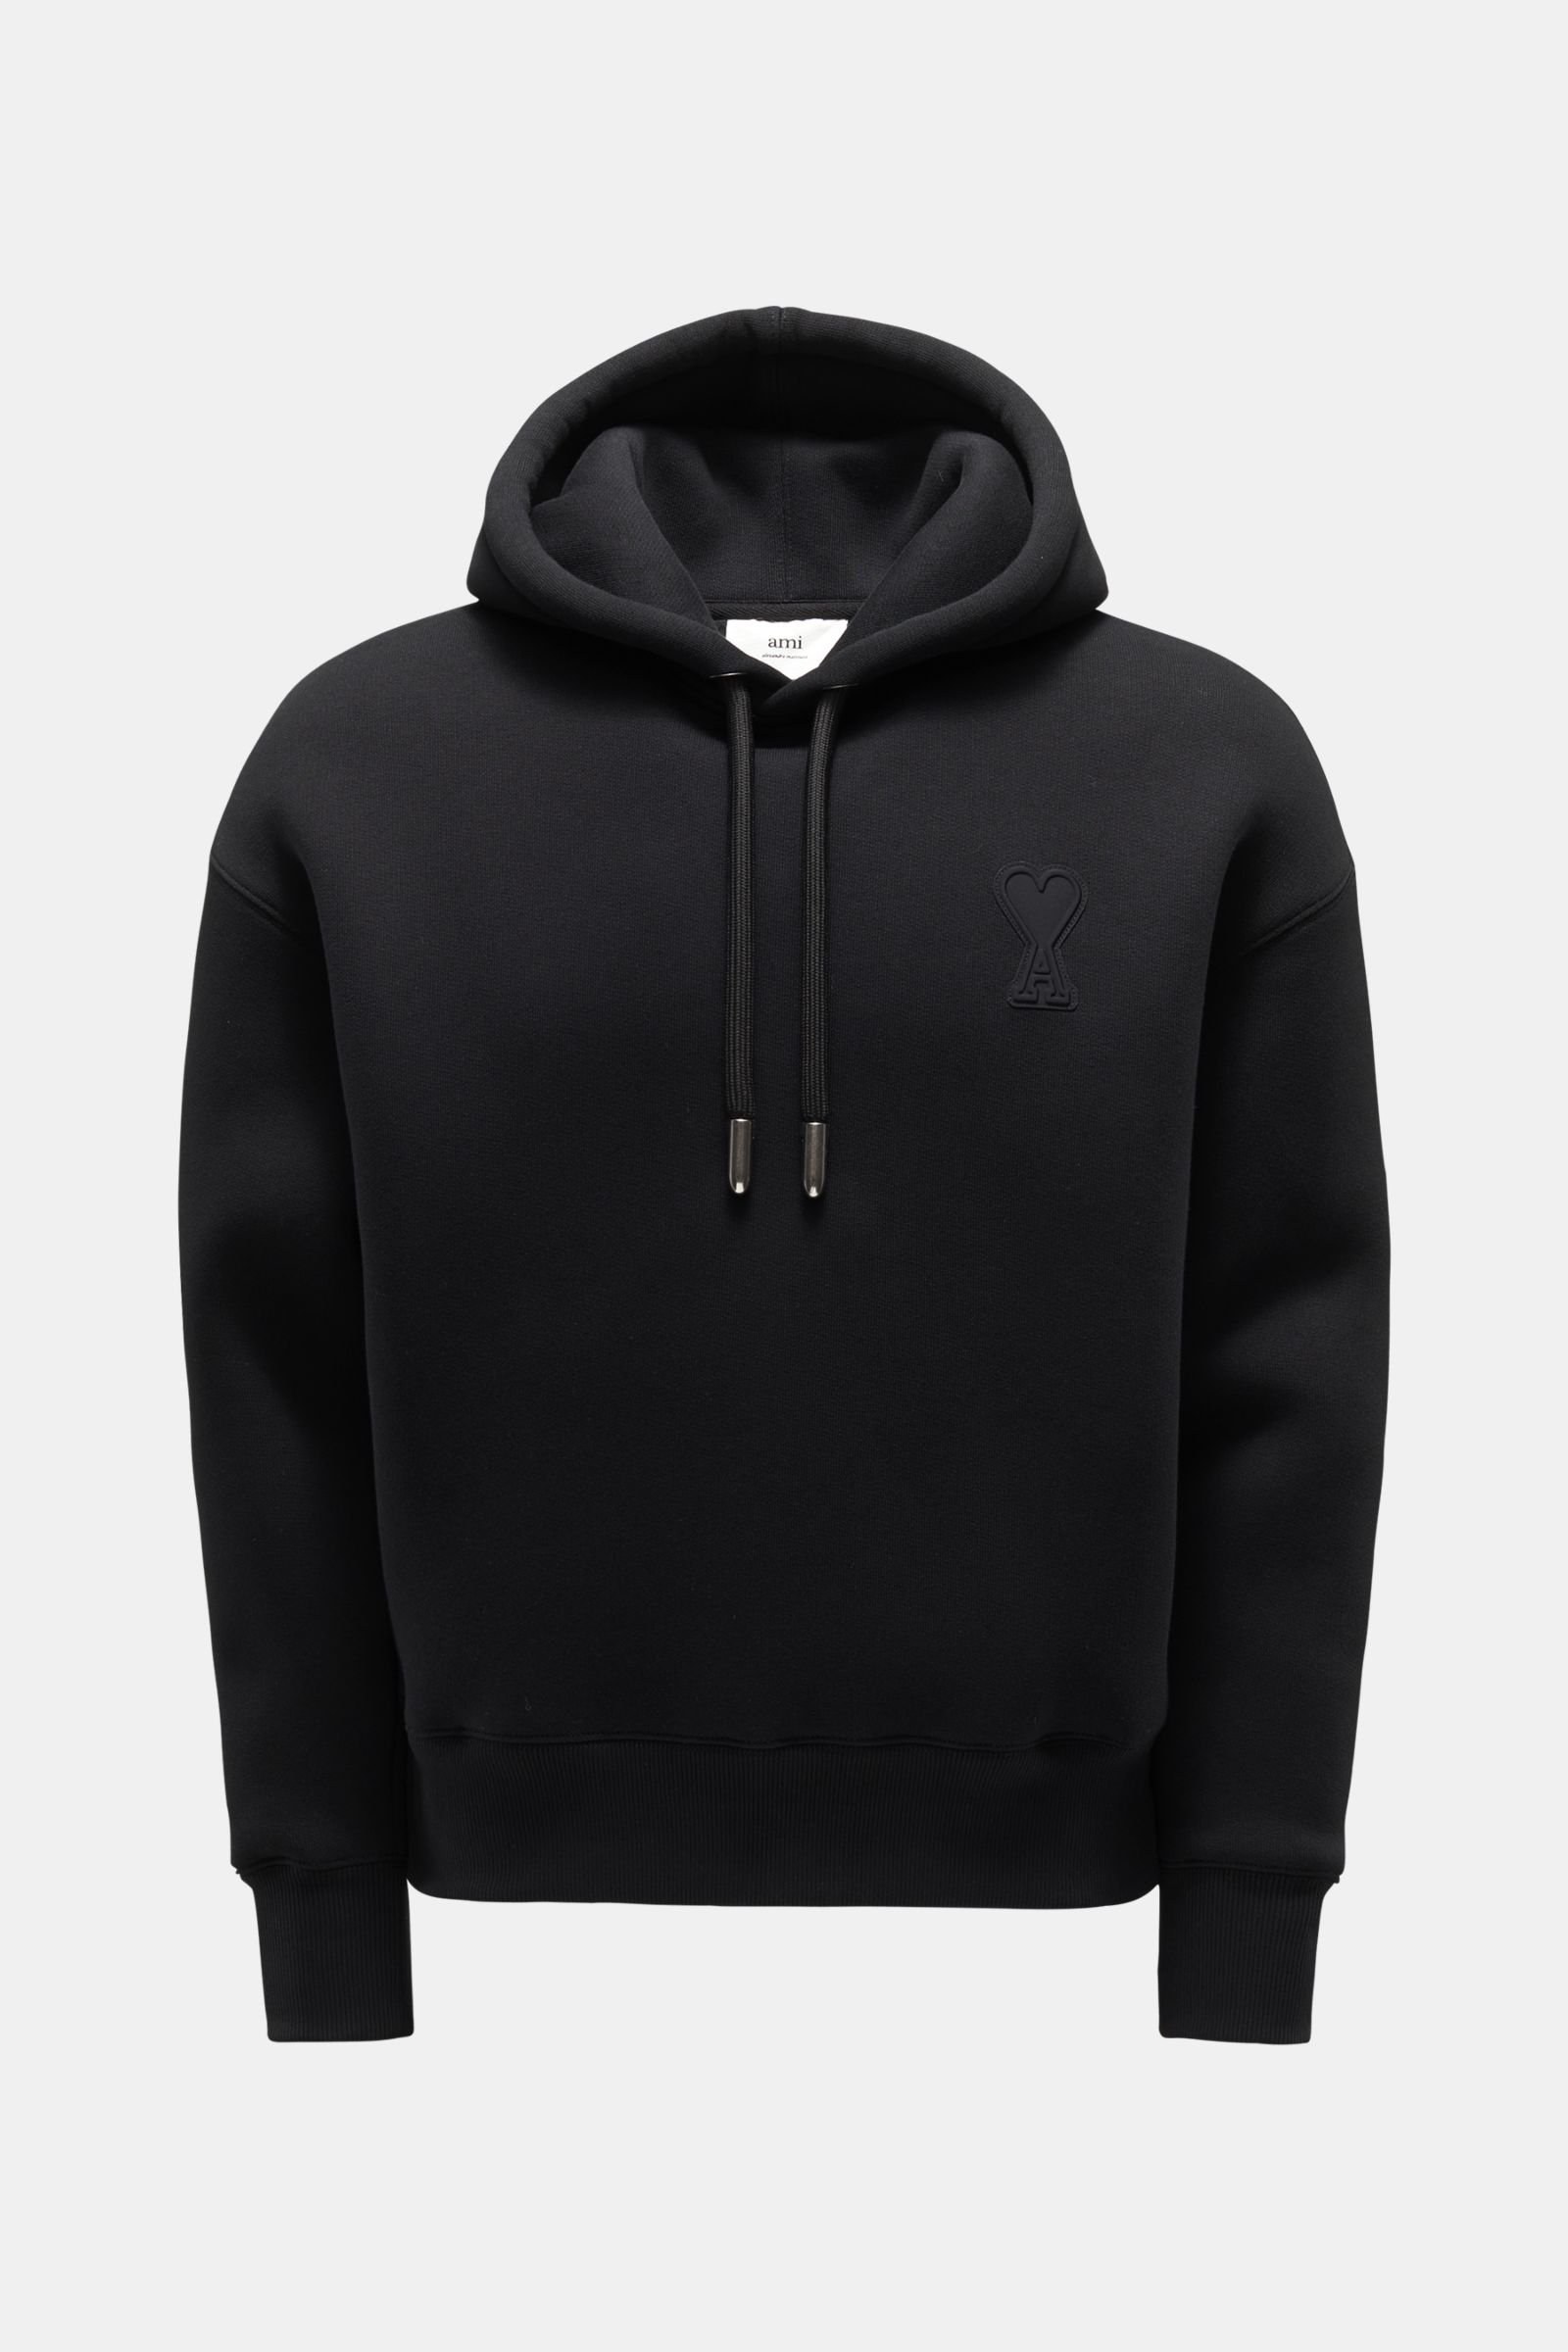 Neoprene hooded jumper black